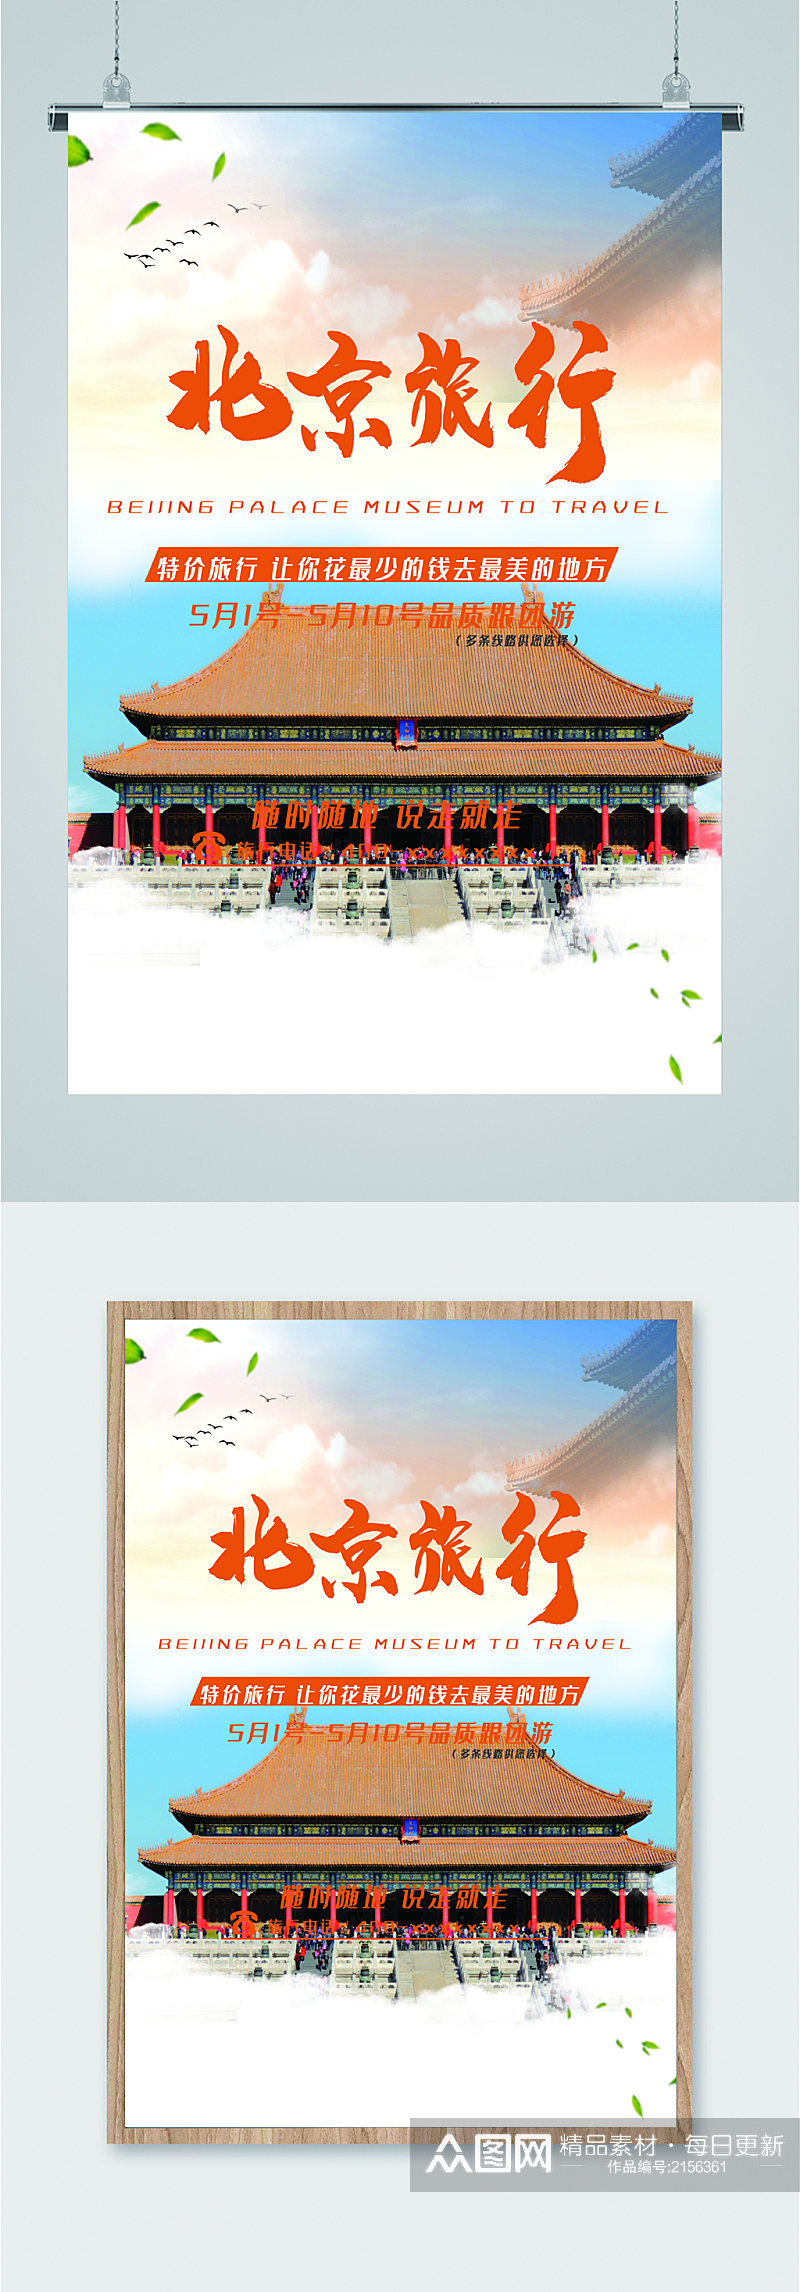 北京节日旅行海报素材